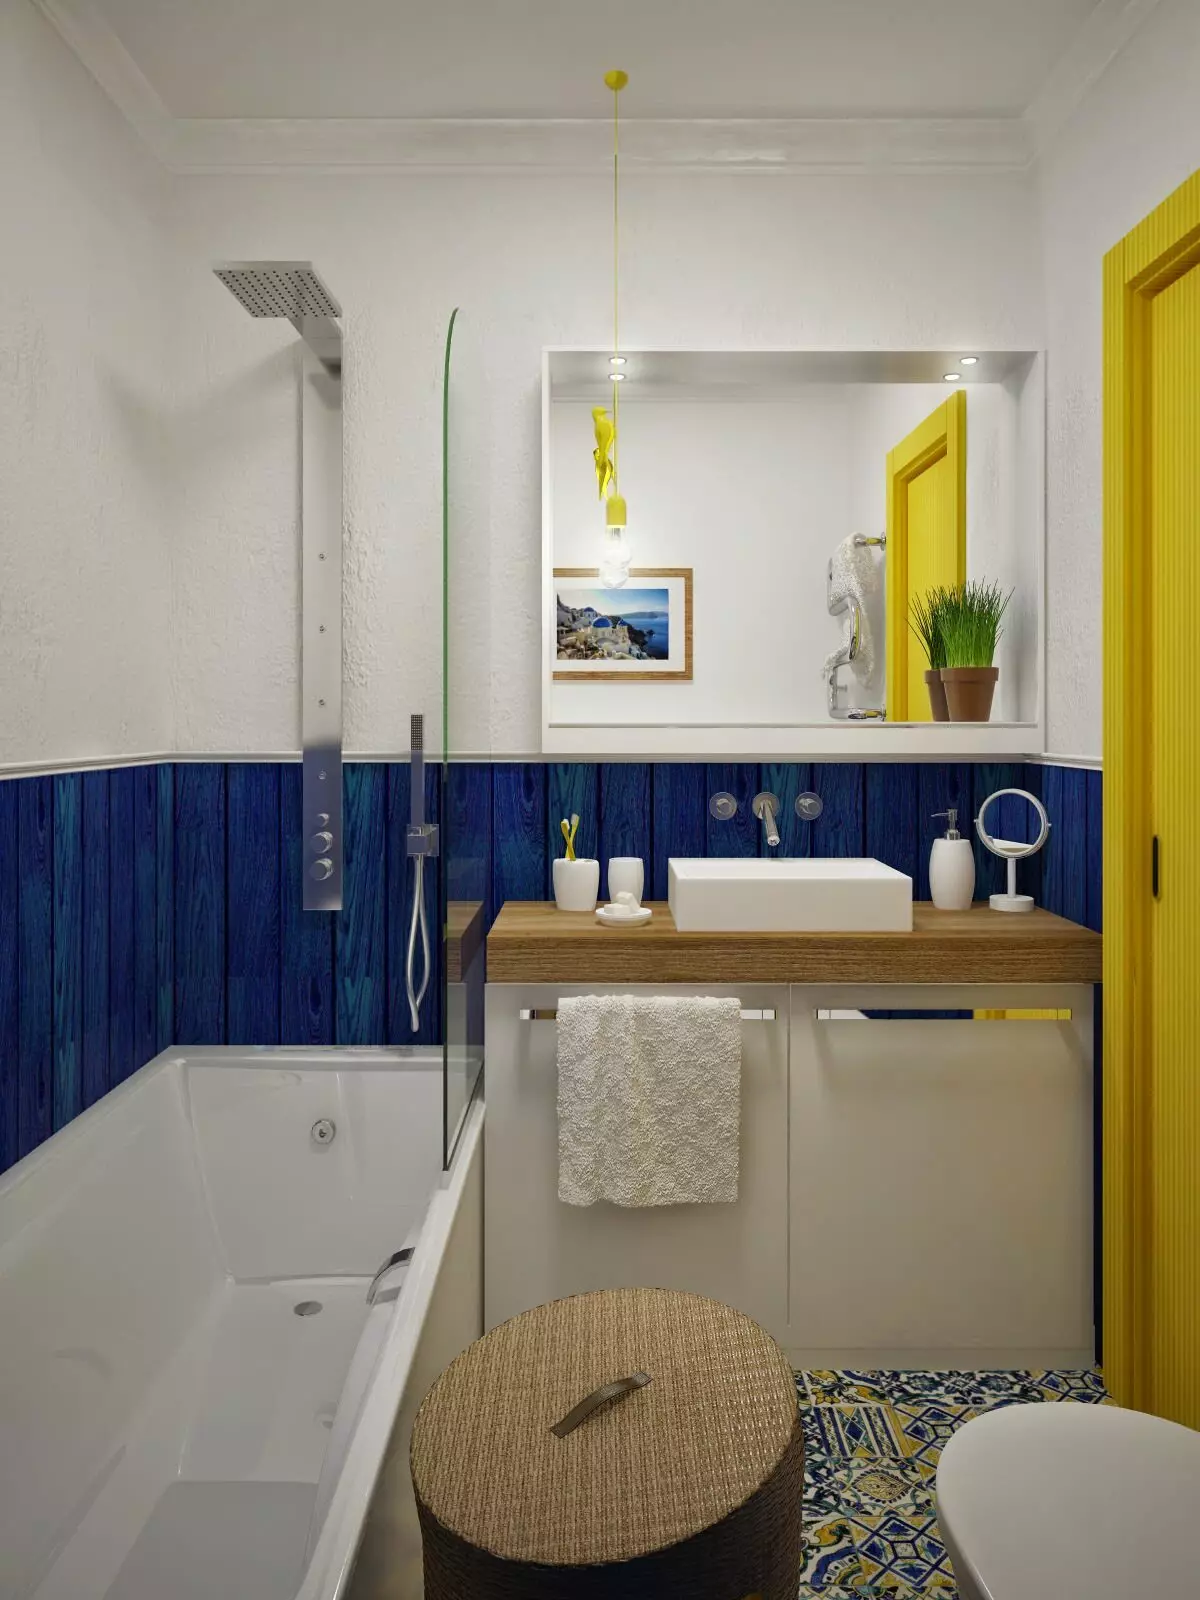 עיצוב אמבטיה בשילוב עם שירותים מרובע 3. M (76 תמונות): עיצוב פנים חדר אמבטיה עם מכונת כביסה, הנחת חדר קטן 10068_23